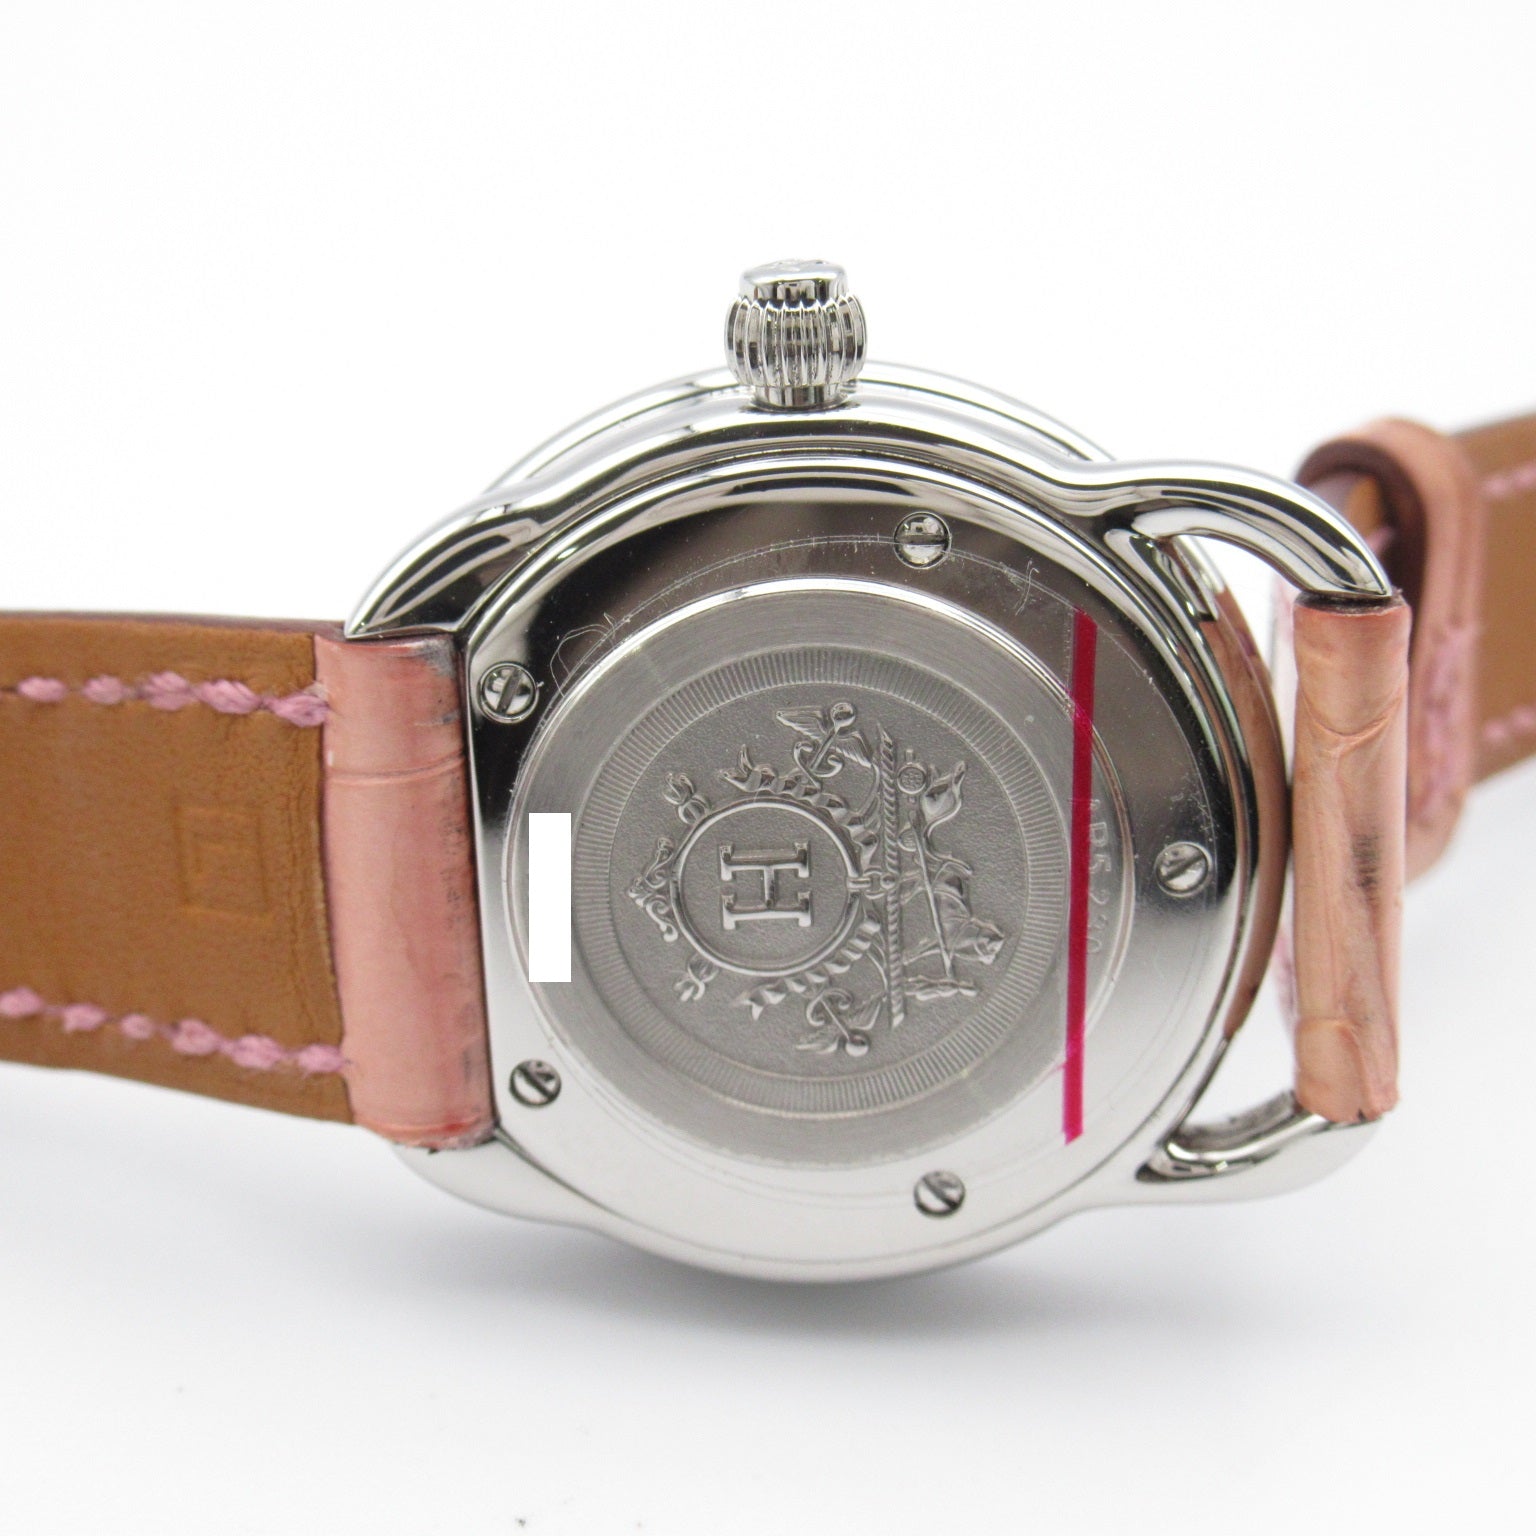 Hermes Hermes Arso Bezel Diamond  Watch Stainless Steel Crocodile  White S AR5.230